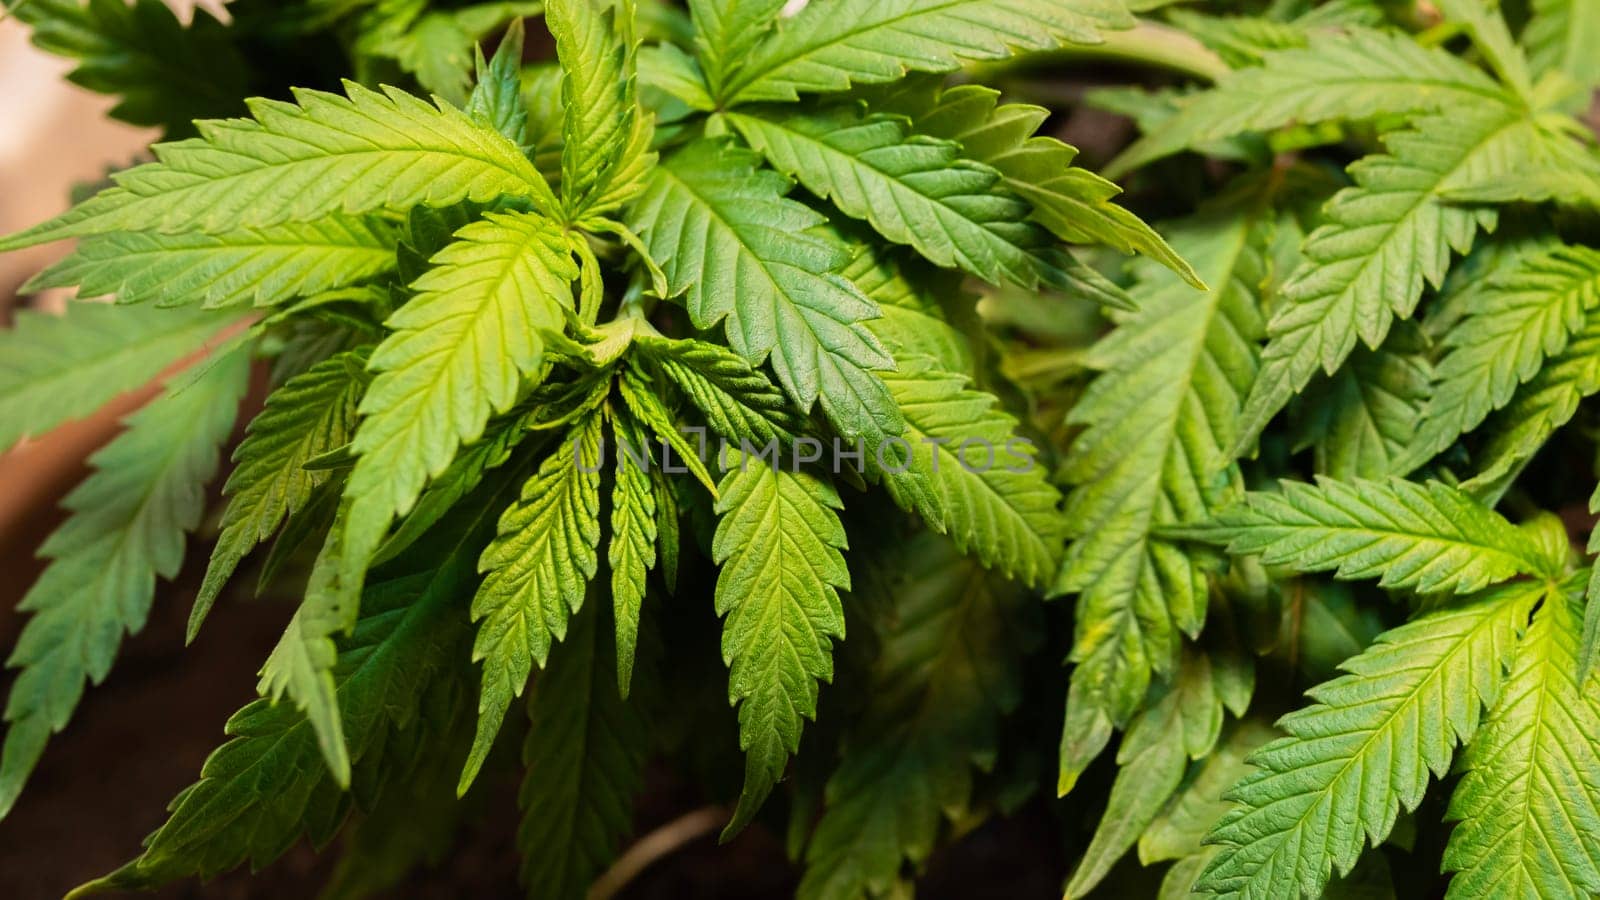 Cannabis background, weed texture, growing marijuana indoor.